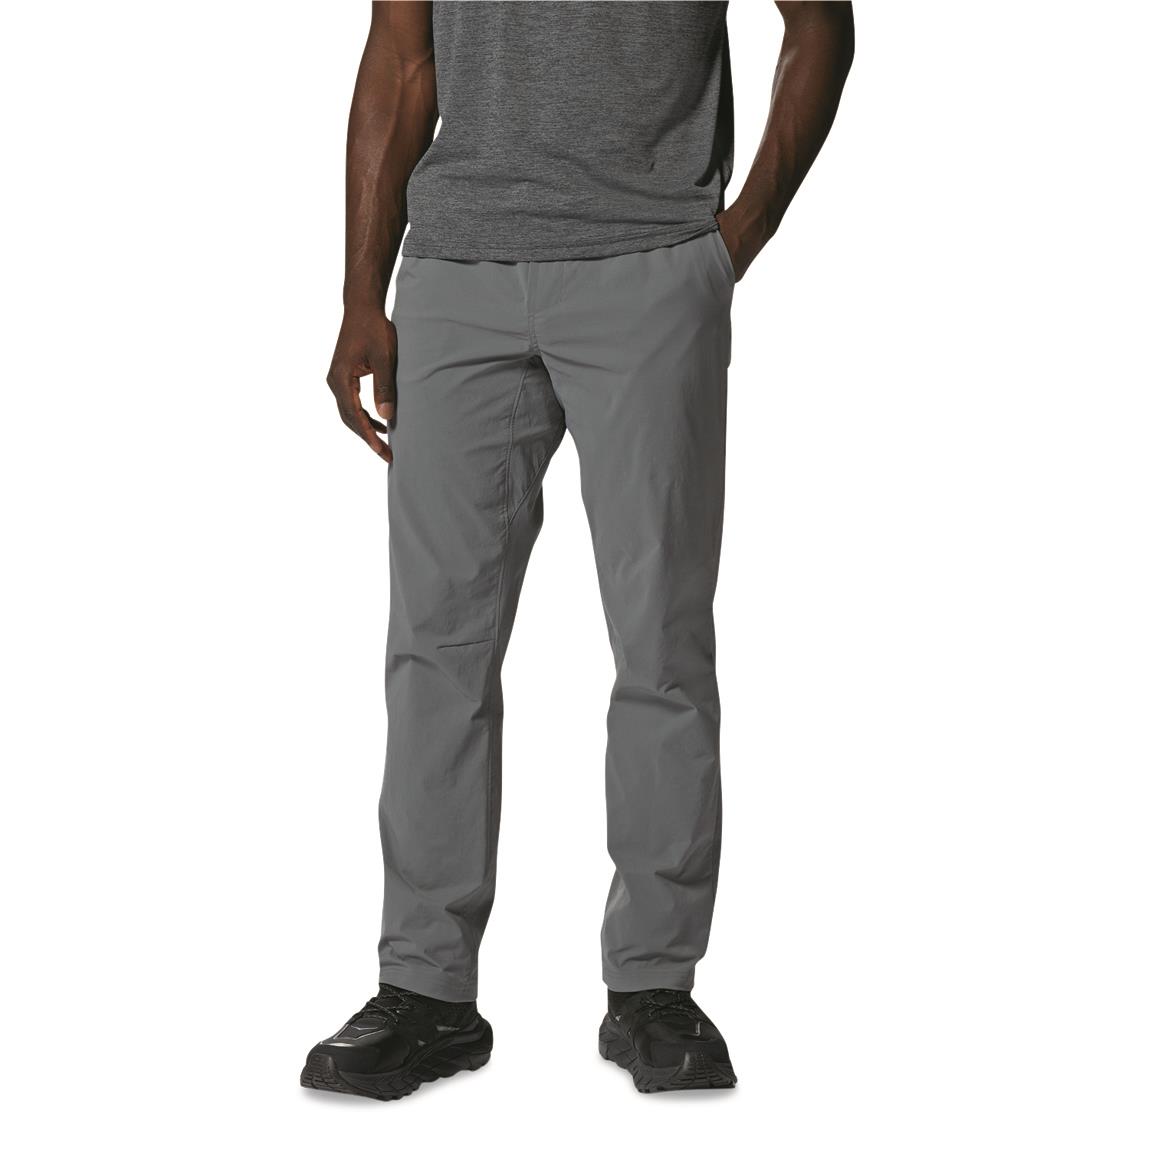 Kryptek Men's Stalker Pants - 700349, Tactical Clothing at Sportsman's ...